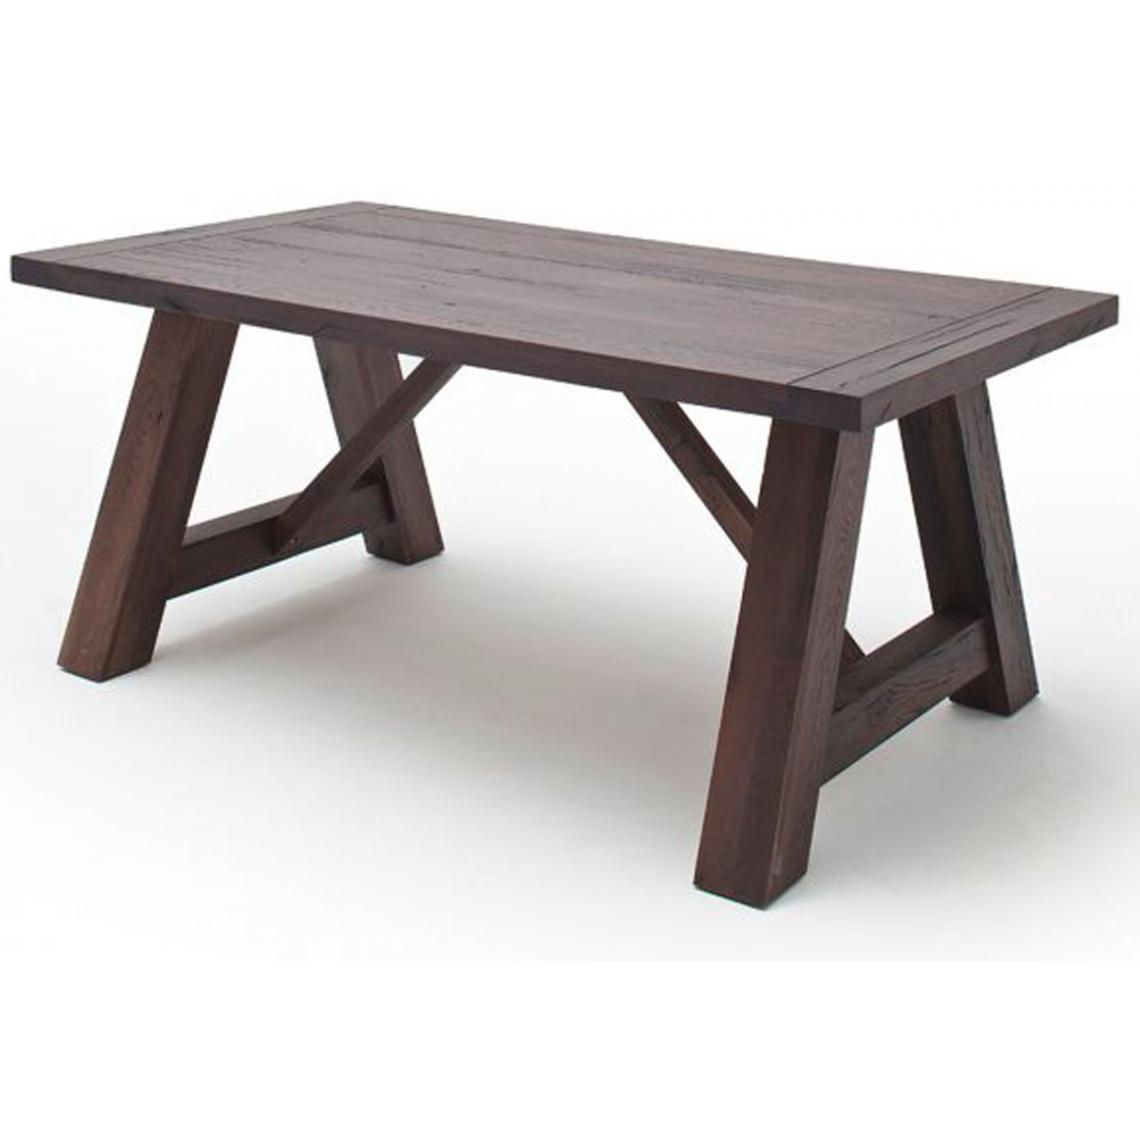 Pegane - Table à manger en chêne massif vieilli laqué mat - L.260 x H.76 x P.100 cm -PEGANE- - Tables à manger